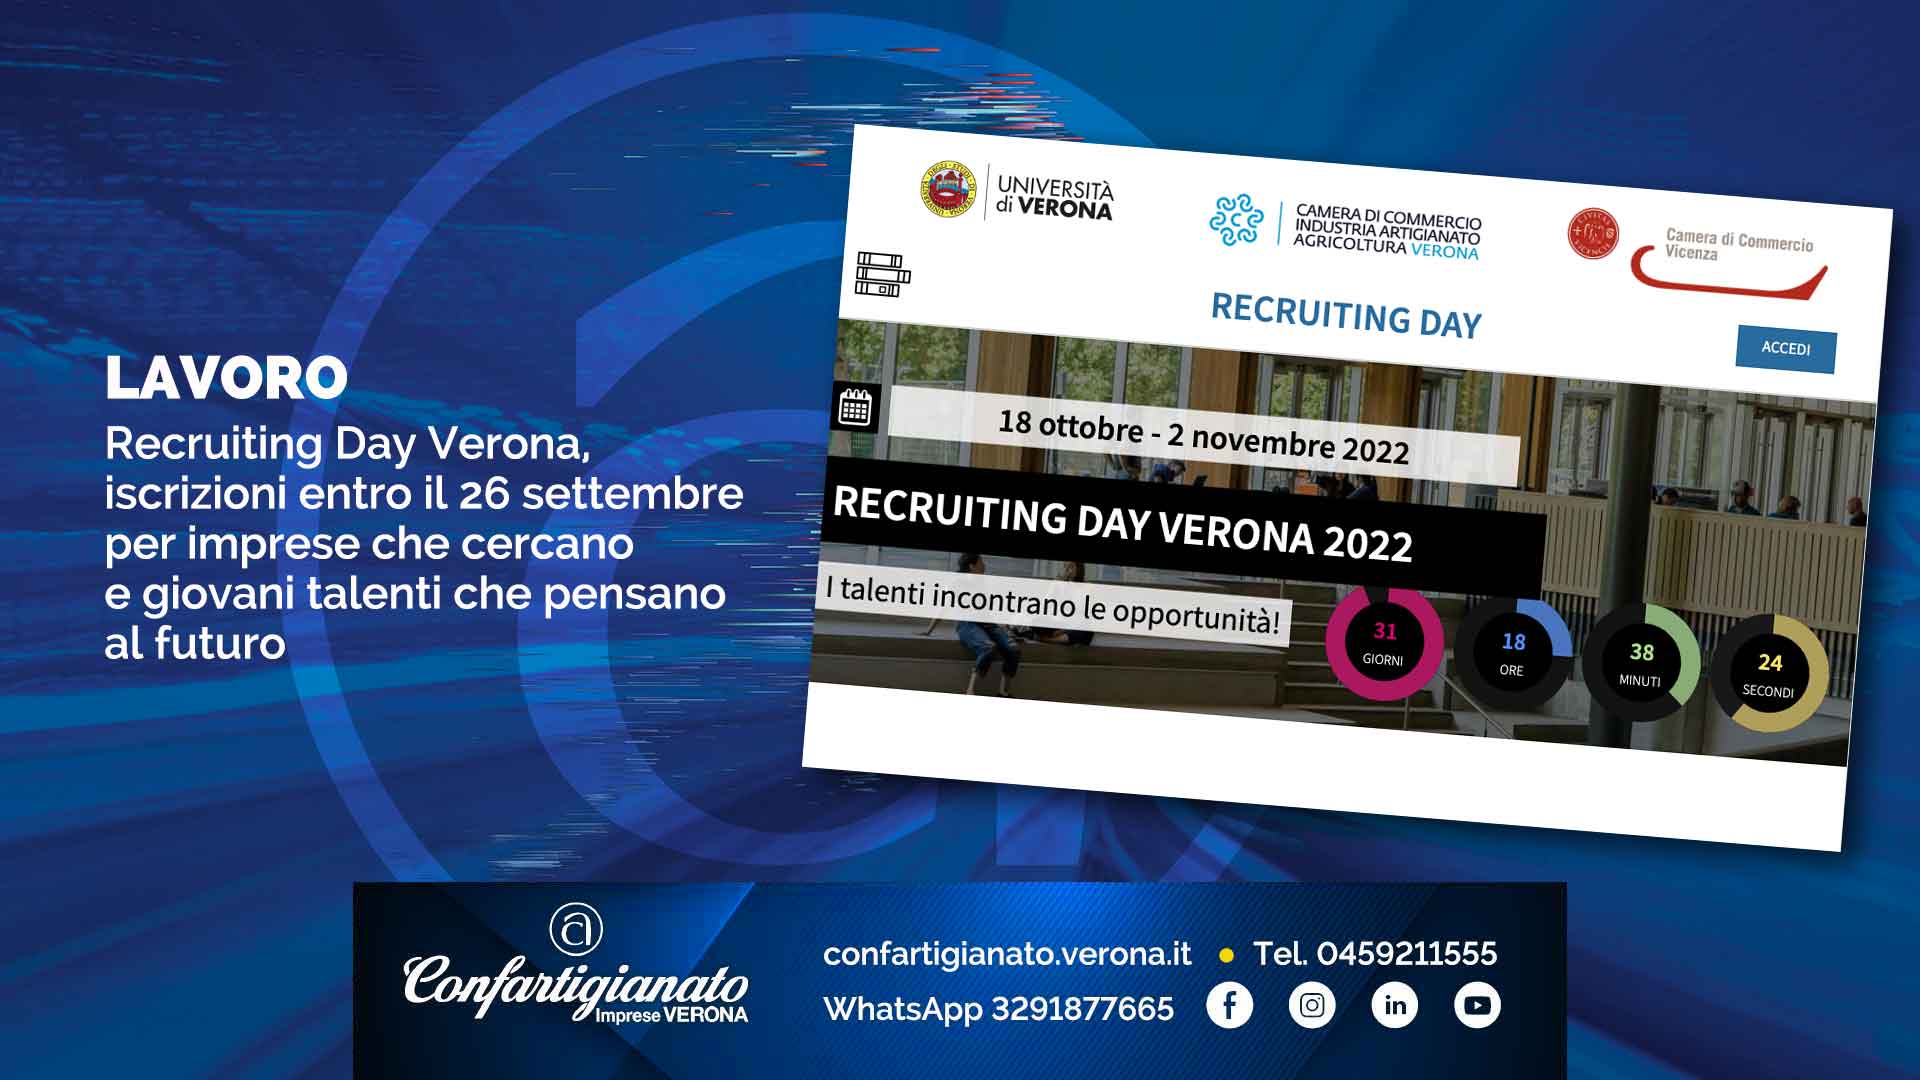 LAVORO – Recruiting Day Verona, iscrizioni entro il 26 settembre per imprese che cercano e giovani talenti che pensano al futuro